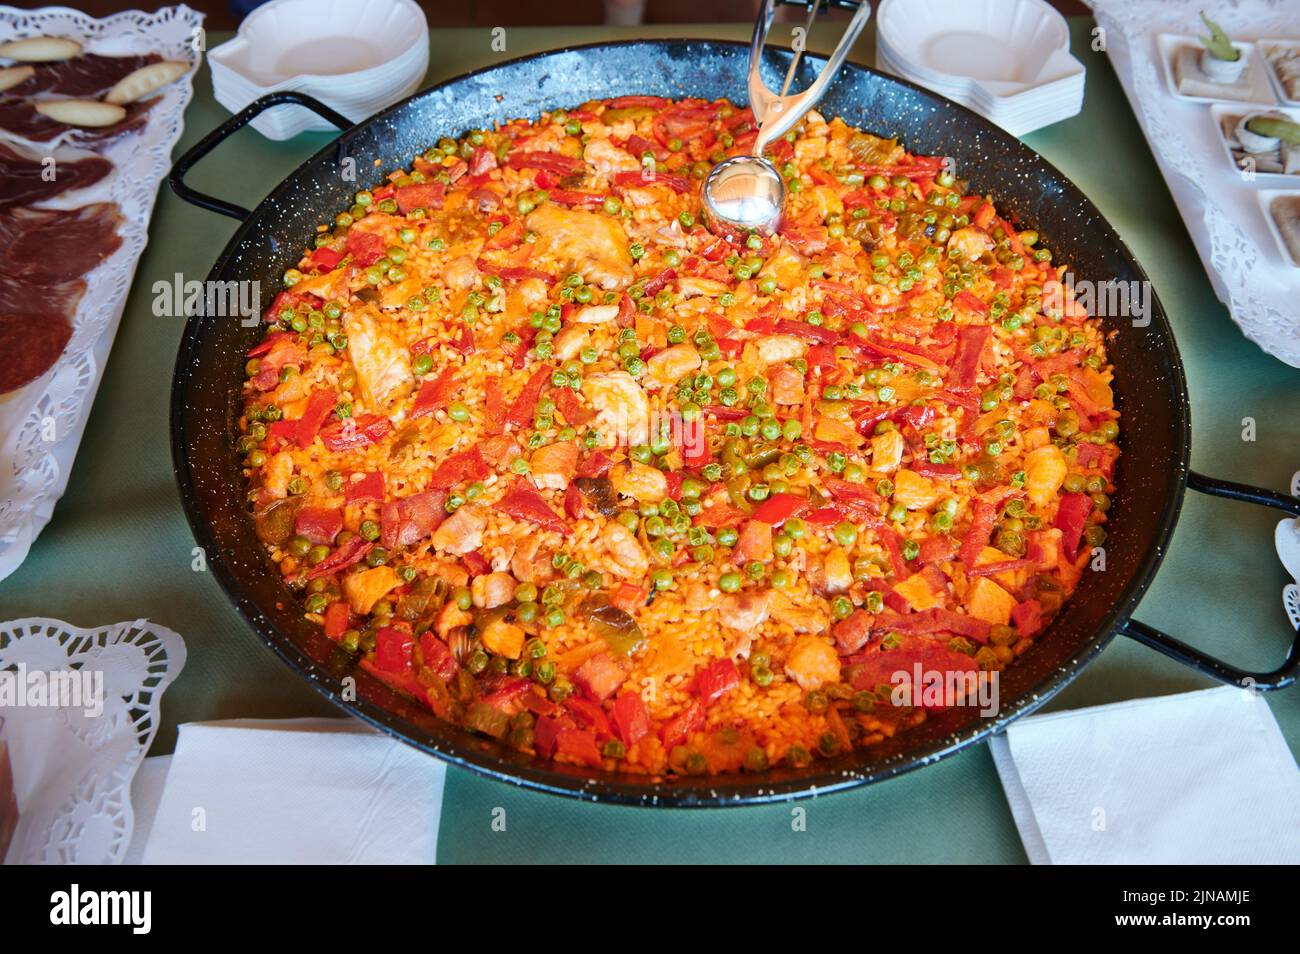 Paella cuisine espagnole typique prête à manger Banque D'Images